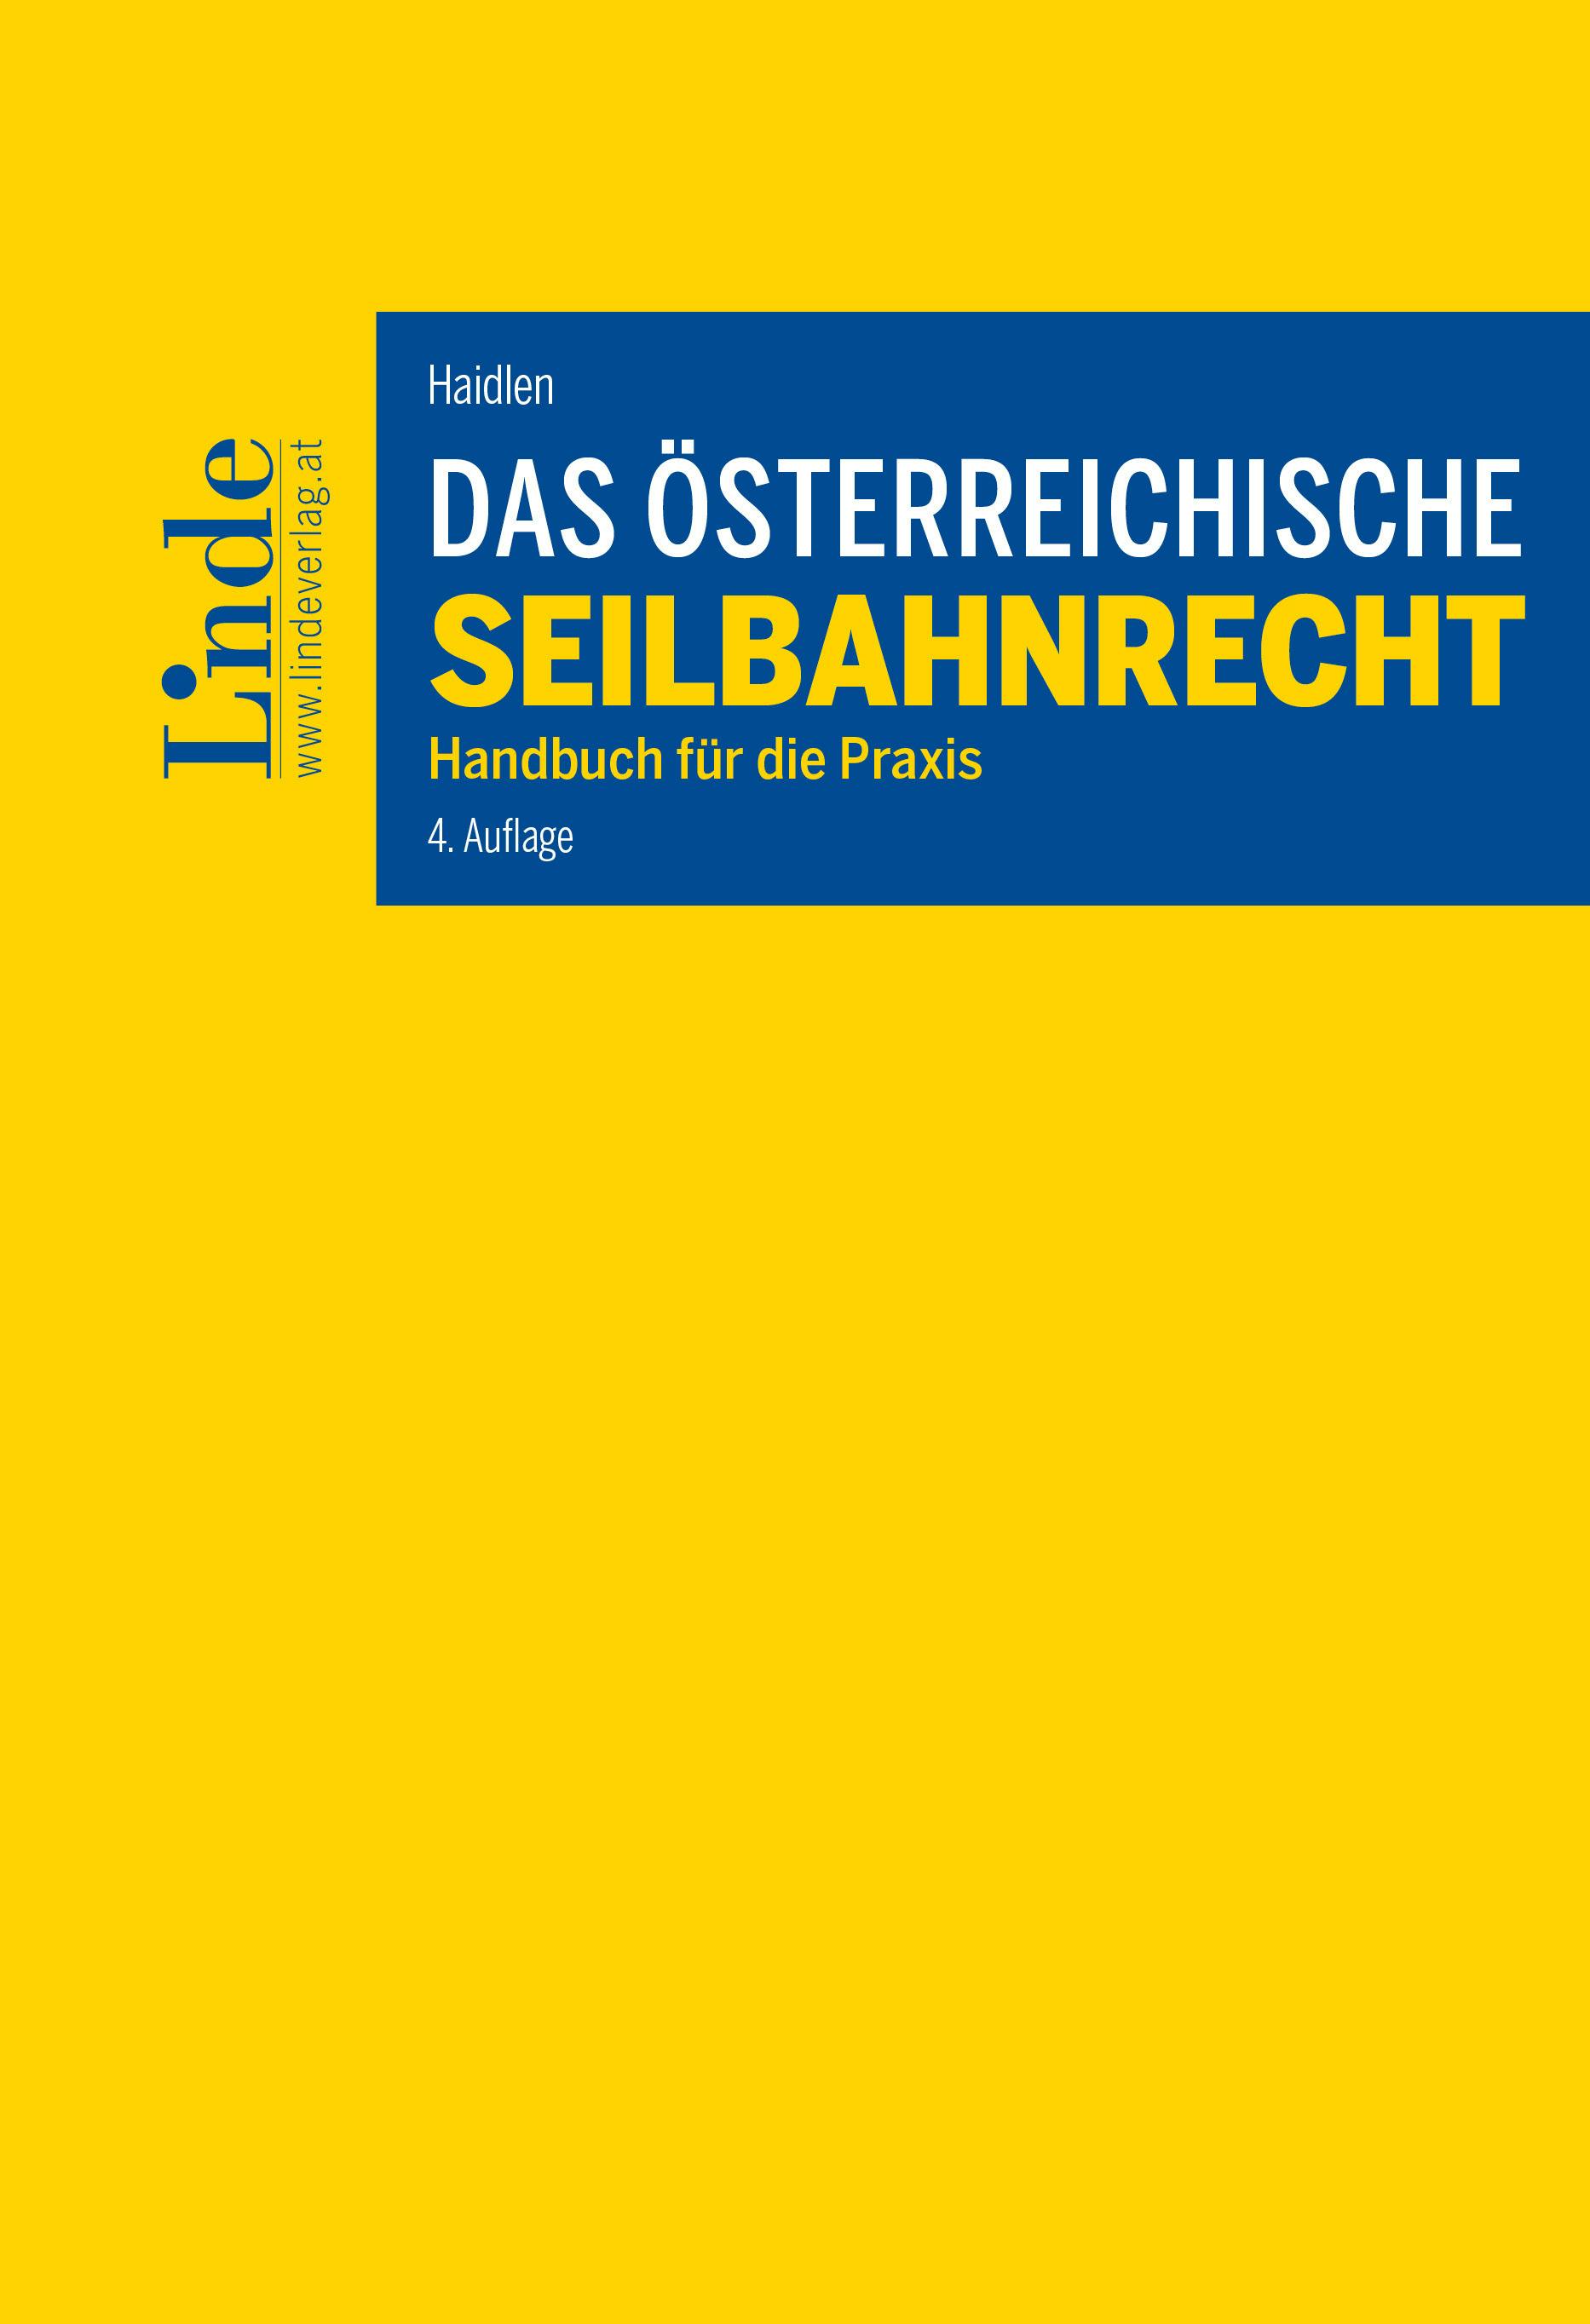 Haidlen
Das österreichische Seilbahnrecht
Handbuch für die Praxis